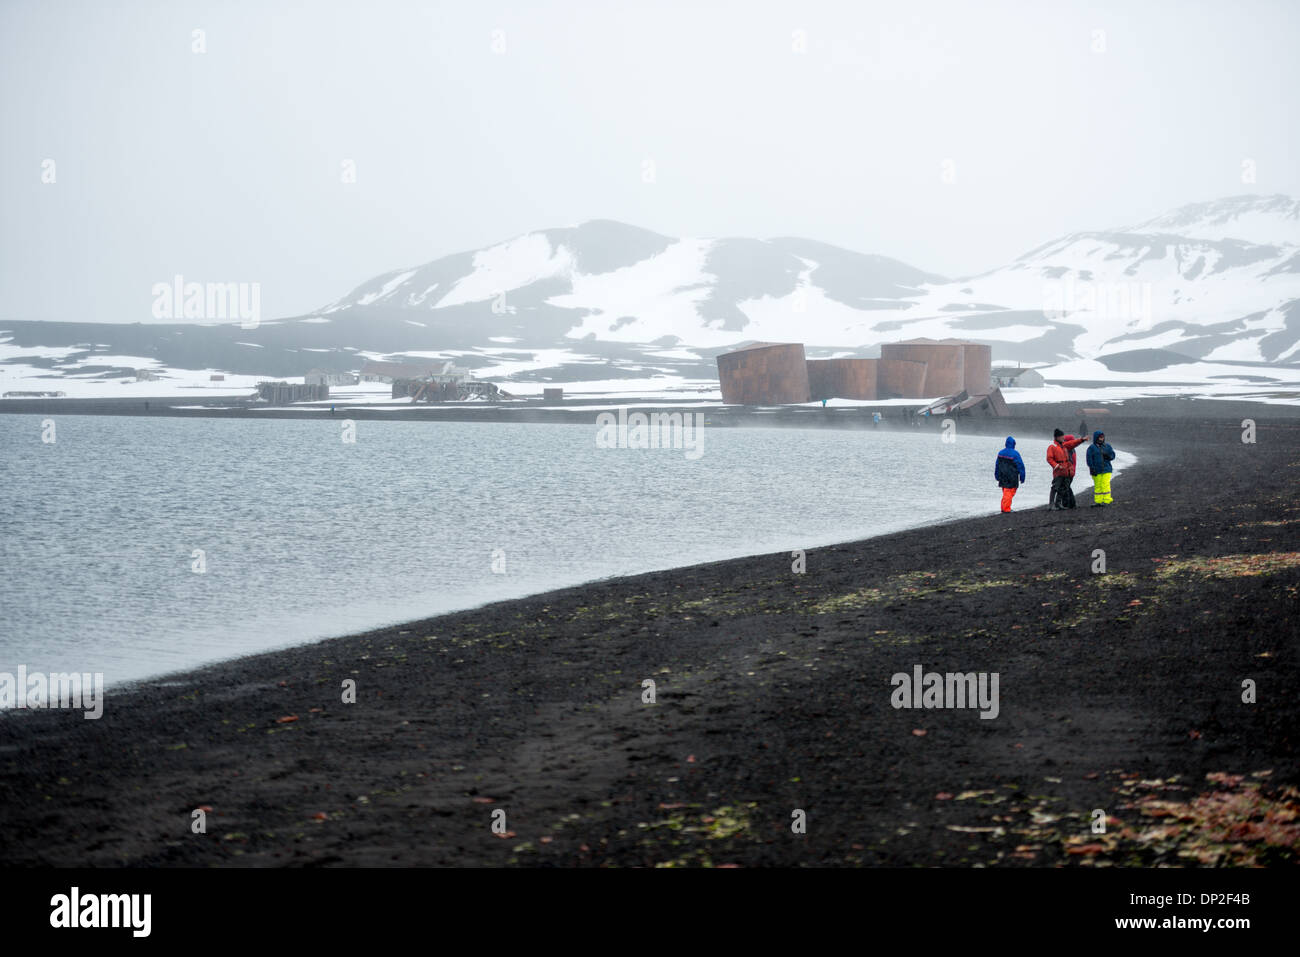 Antartide - La spiaggia di Whalers Bay, isola Deception, con le rovine della abbandonata la stazione baleniera in background. Isola Deception, a sud le isole Shetland, è una caldera di un vulcano ed è composta di roccia vulcanica. Foto Stock